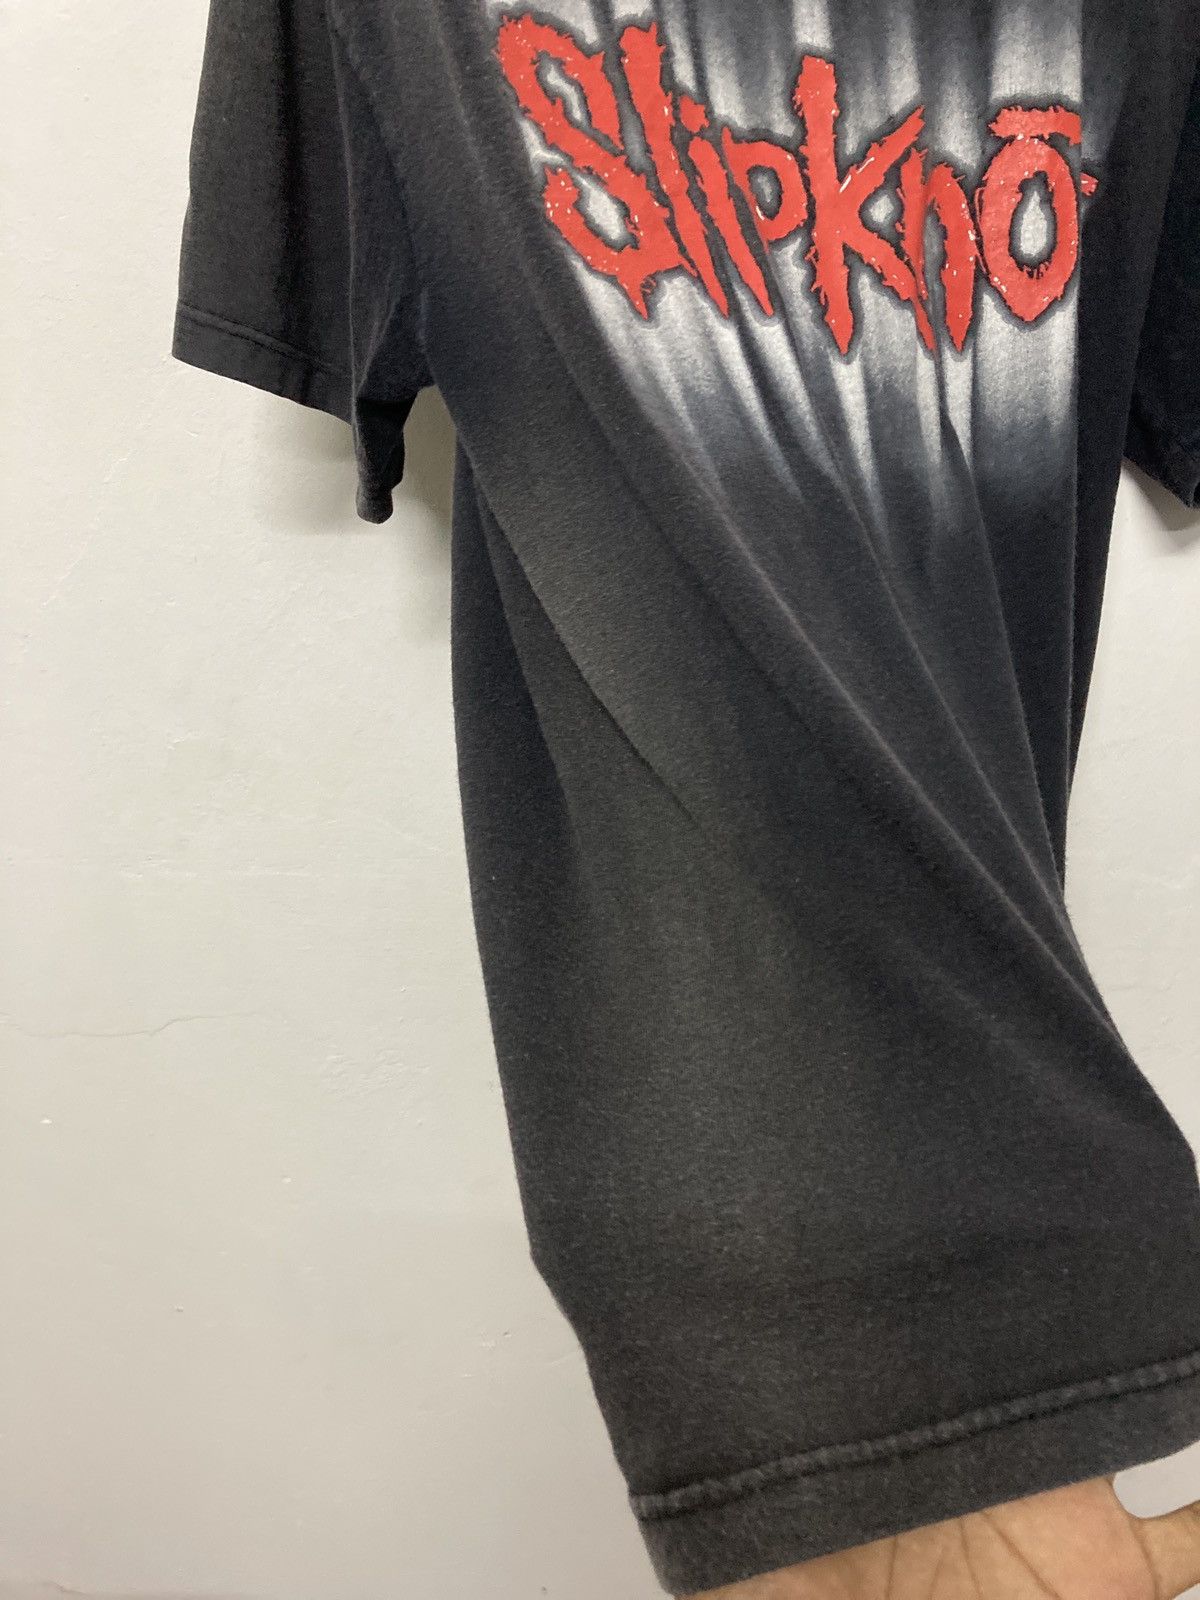 Vintage 2001 Slipknot Sun Faded Tshirt - 16